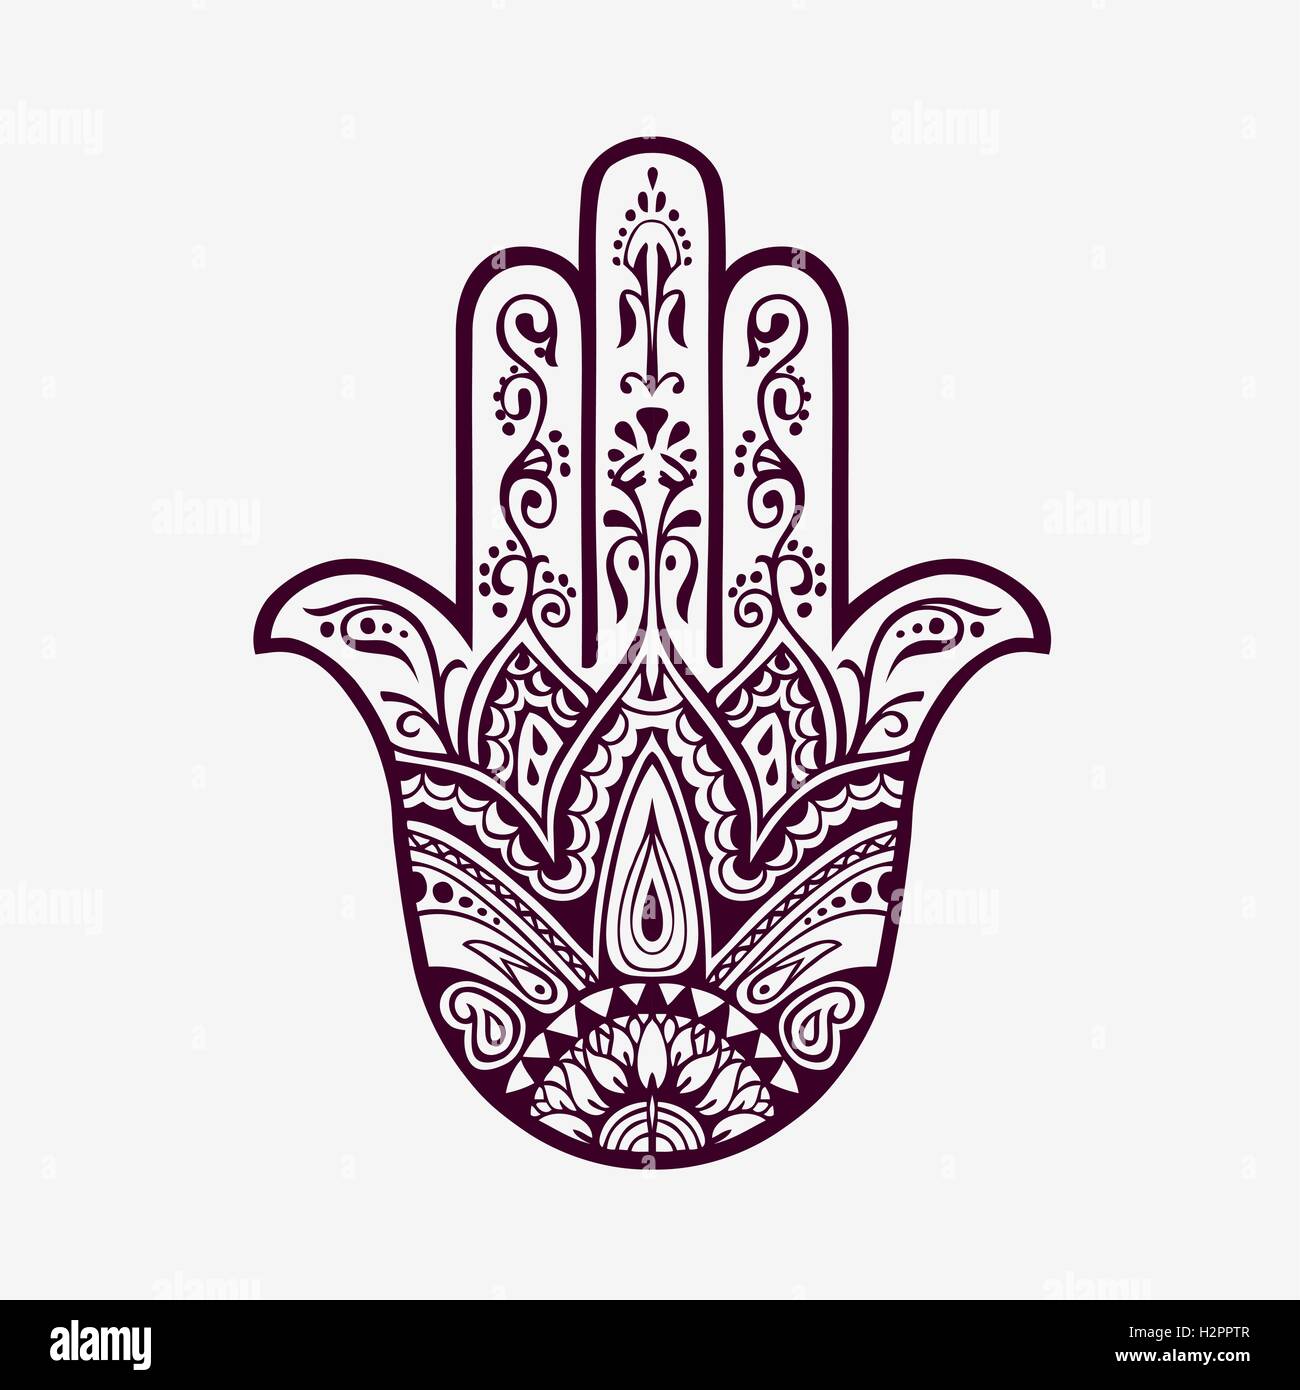 Hamsa mit ethnischen Ornamente. Hand gezeichnet Vektor-illustration Stock Vektor